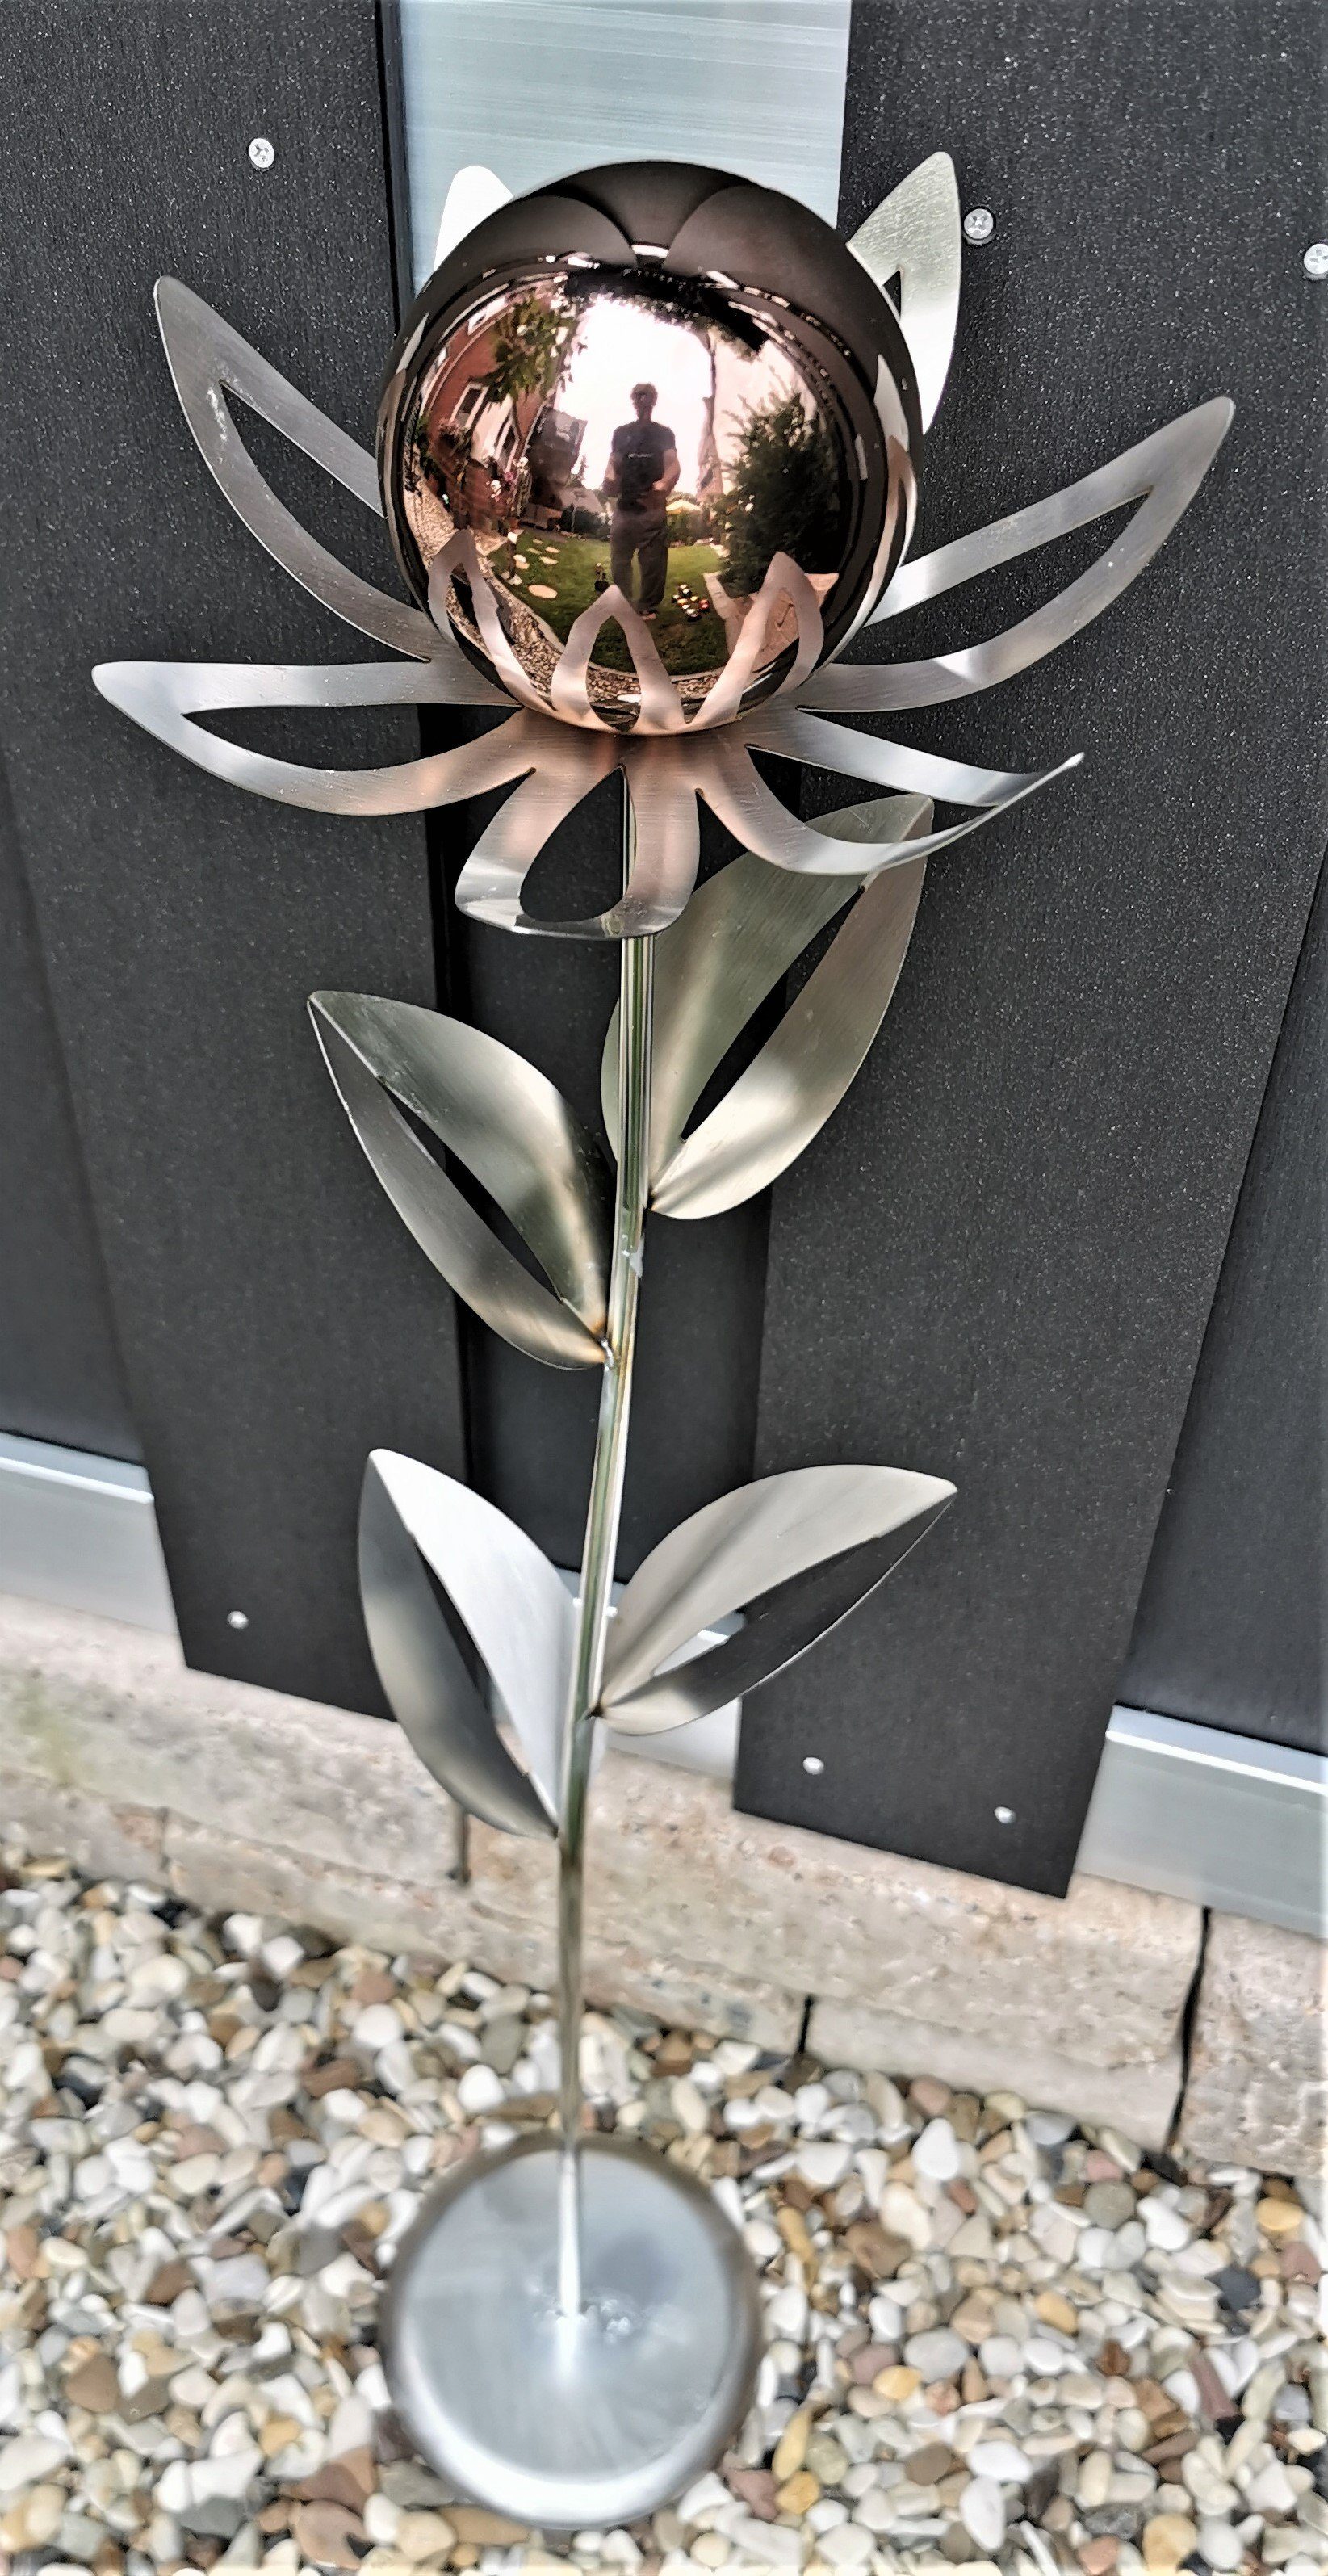 Jürgen Bocker Garten-Ambiente Gartenstecker Skulptur Blume Paris Edelstahl matt 77 cm mit Kugel und Standfuß golden rose